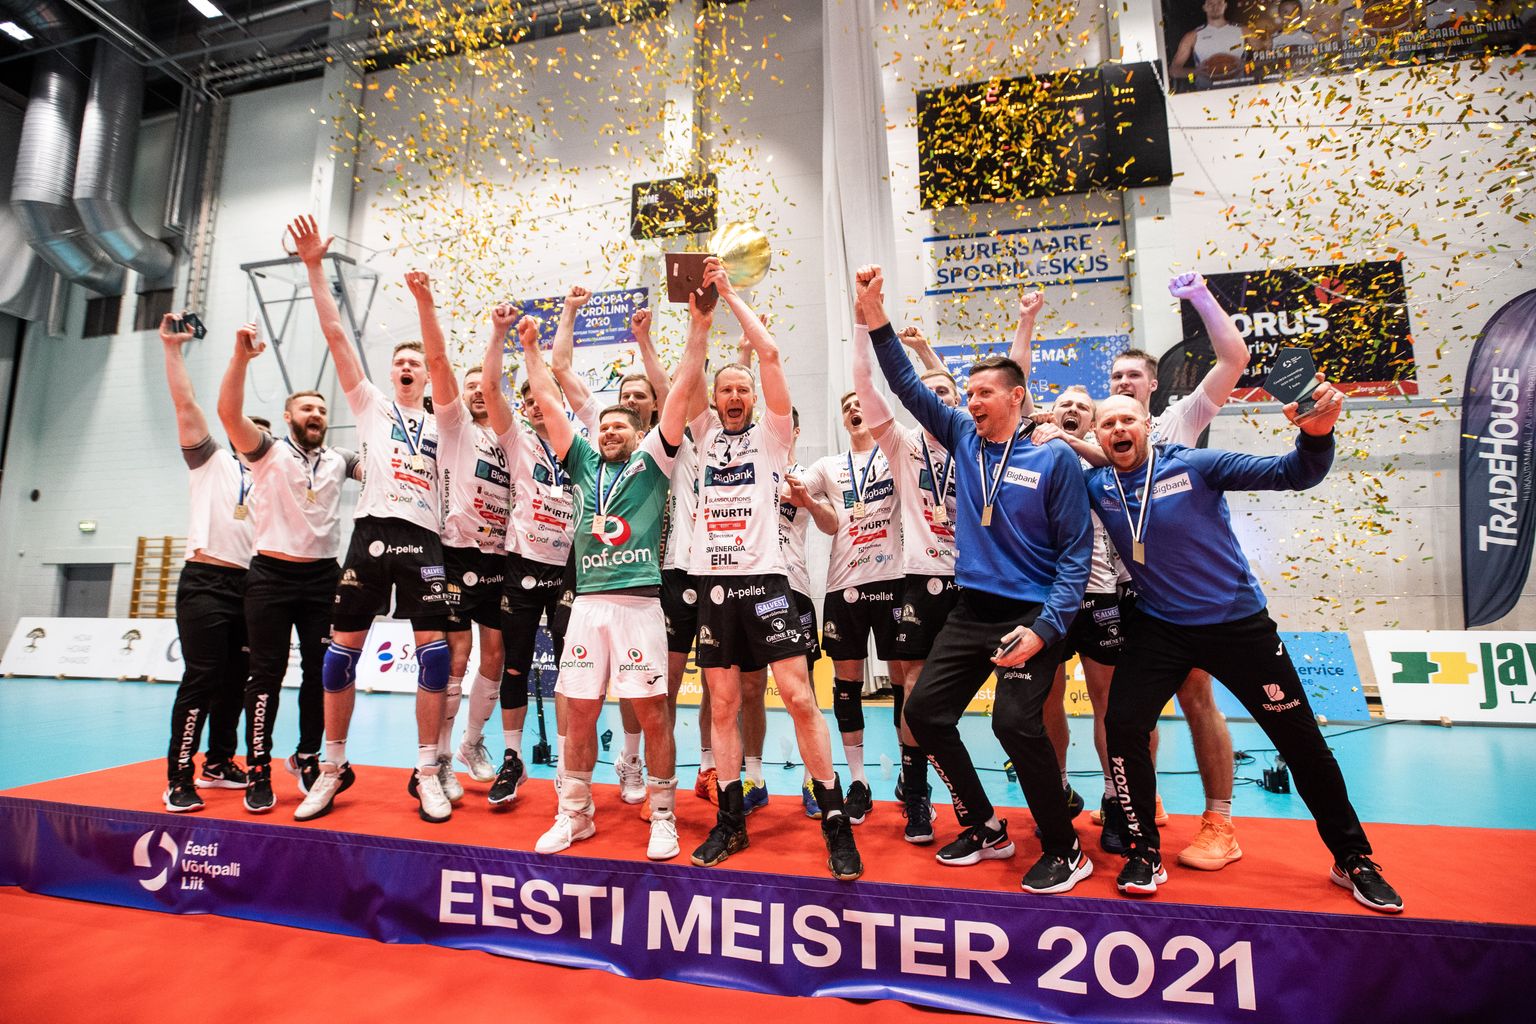 Eesti meistrivõistlused lõppesid Tartu Bigbanki triumfiga. Kuidas läheb Credit24 Meistriliigas?